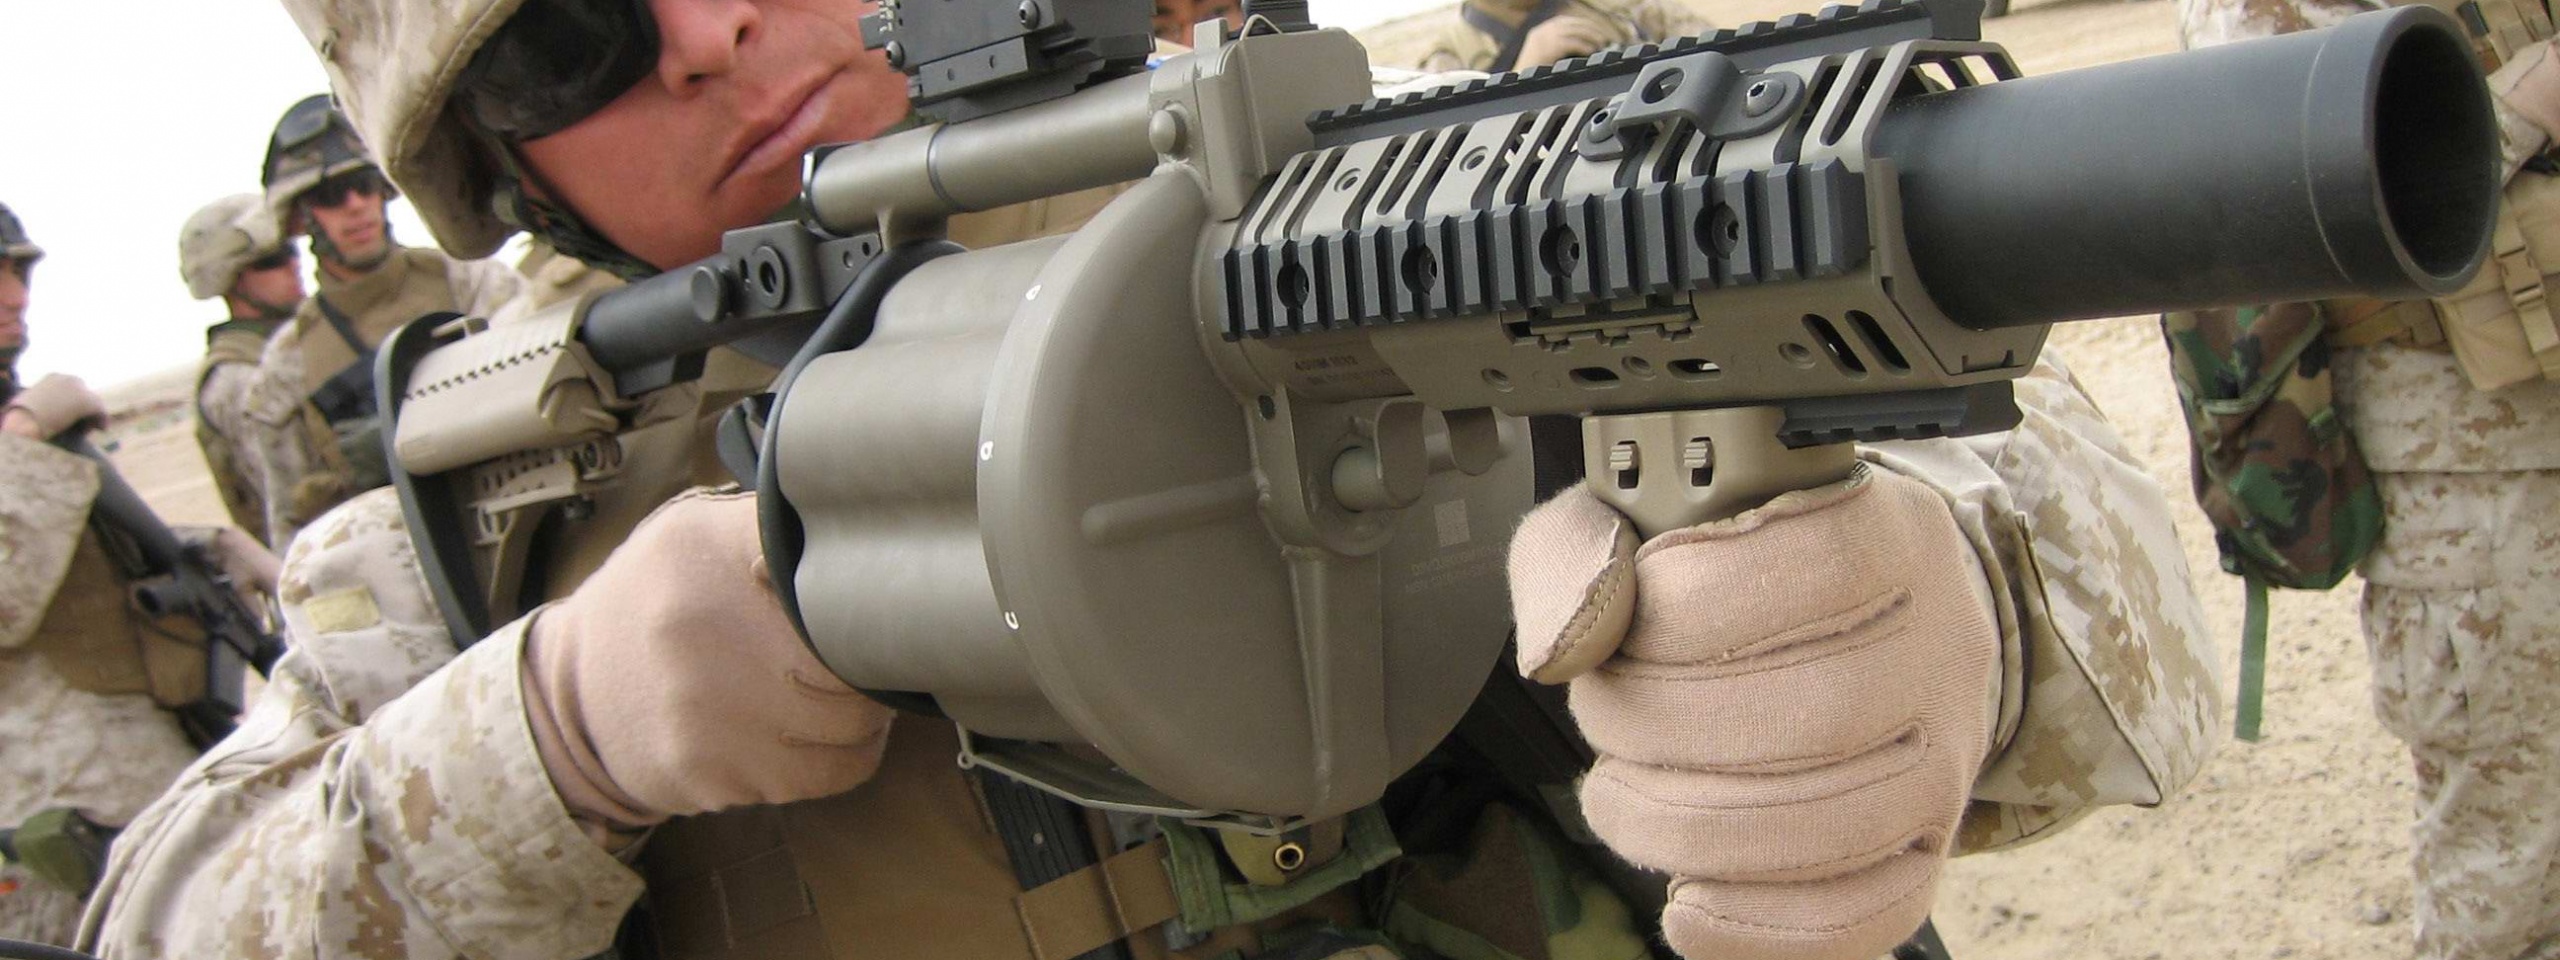 M32 Grenade Launcher